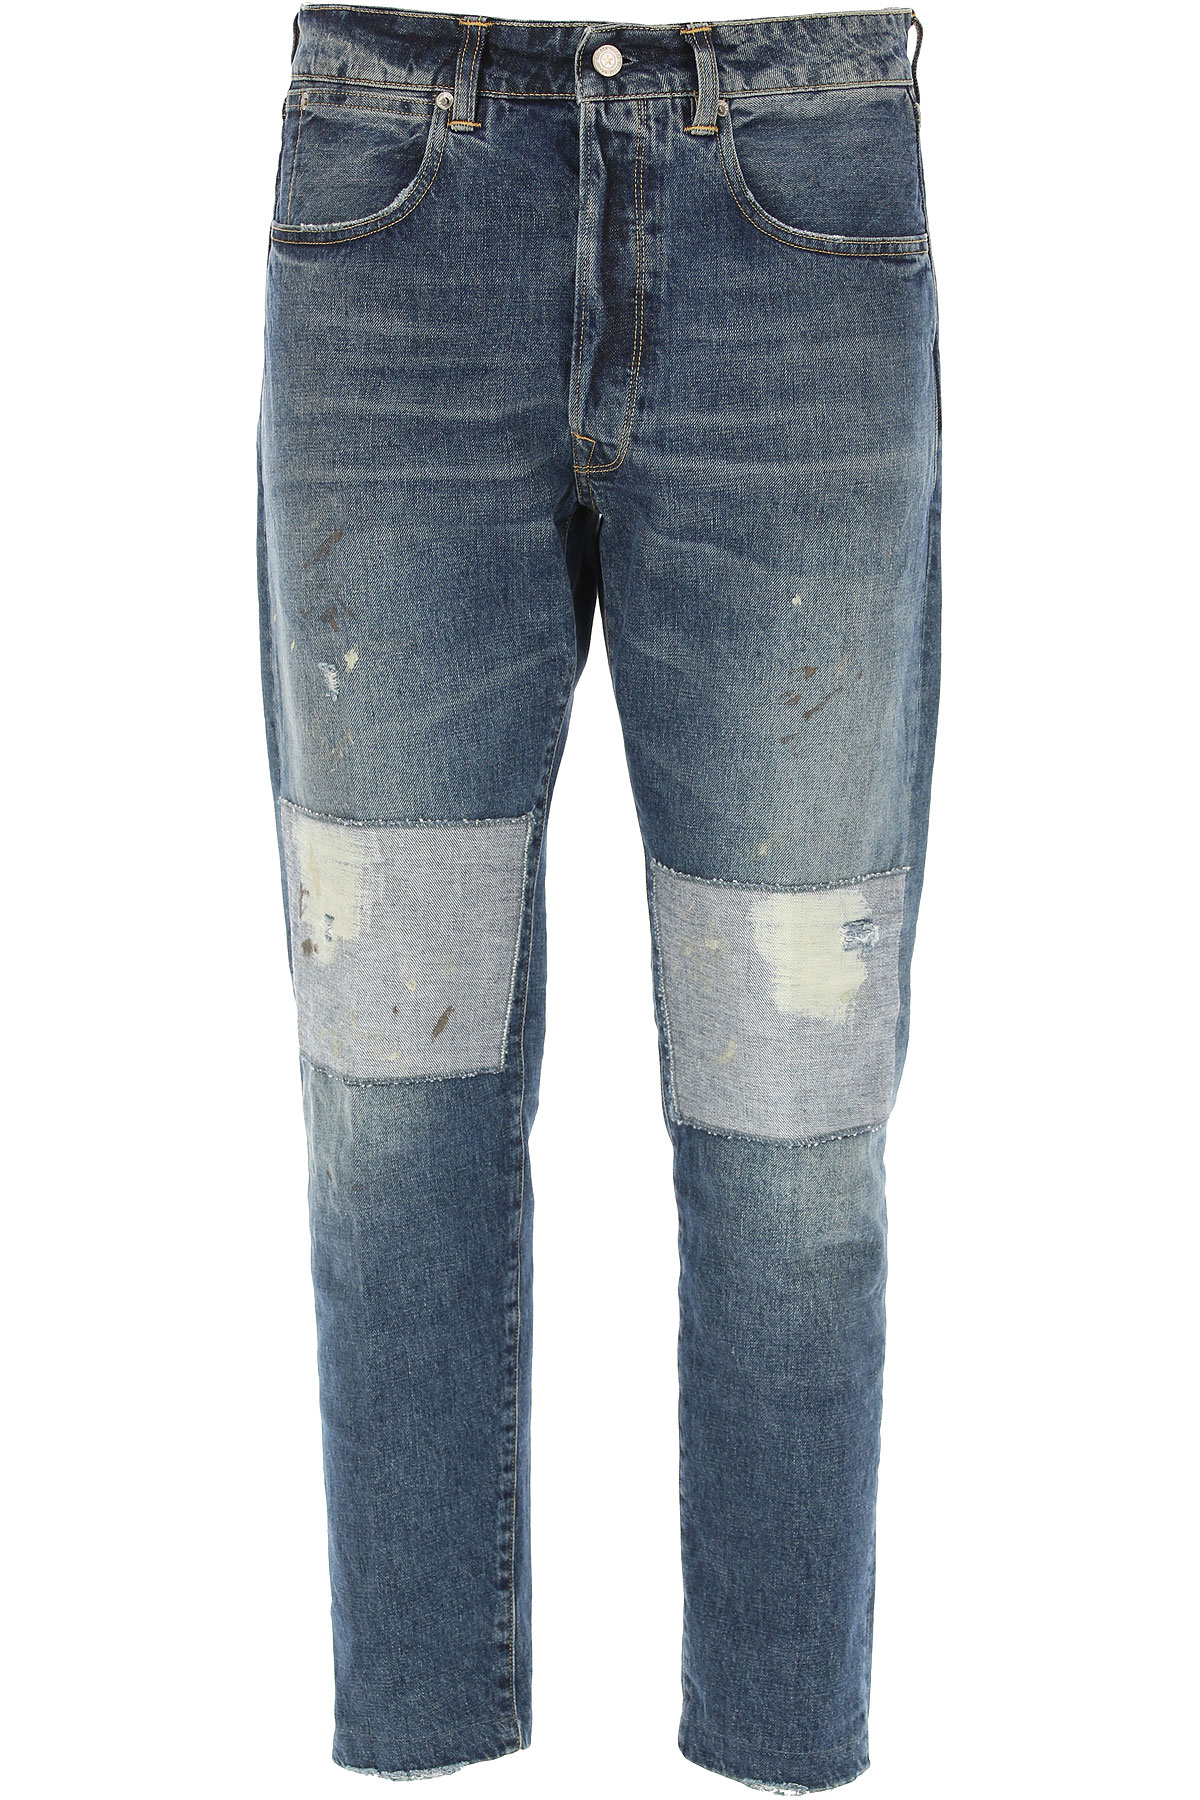 Golden Goose Jeans, Bluejeans, Denim Jeans für Herren Günstig im Sale, Denim- Blau, Baumwolle, 2017, 46 47 48 49 50